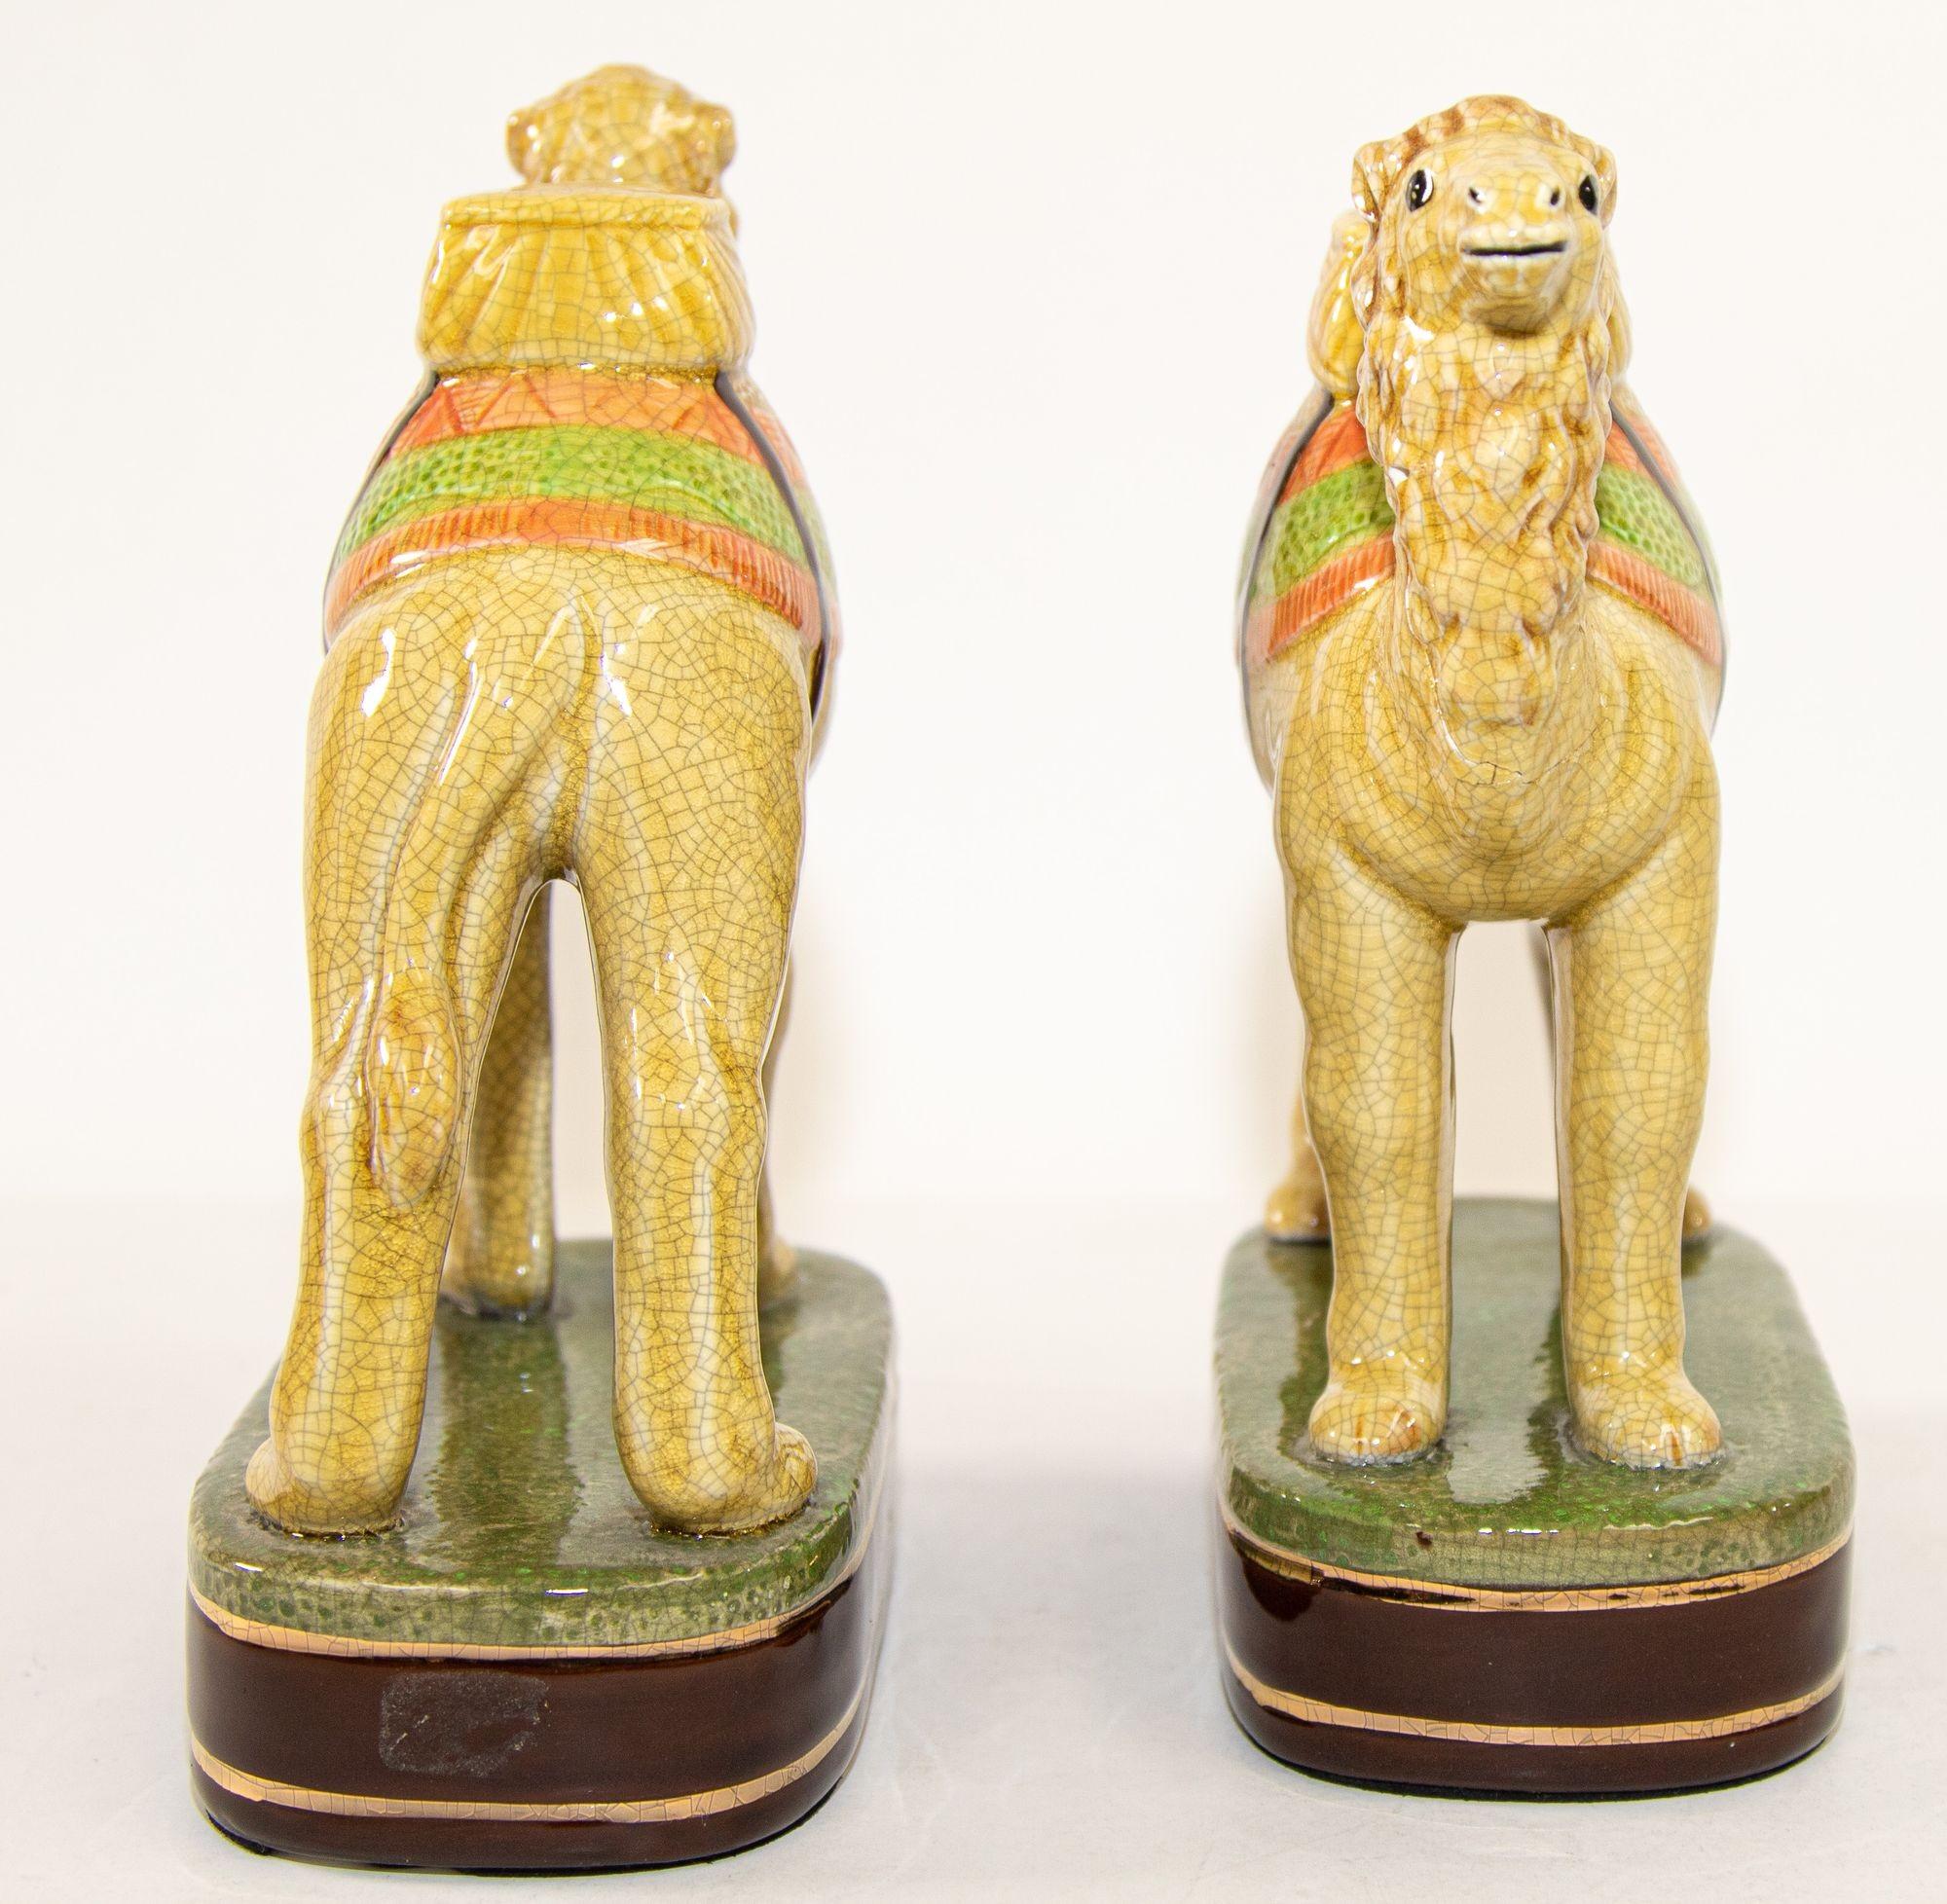 Vintage Porcelain Camel Sculptures Figurines Bookends For Sale 3